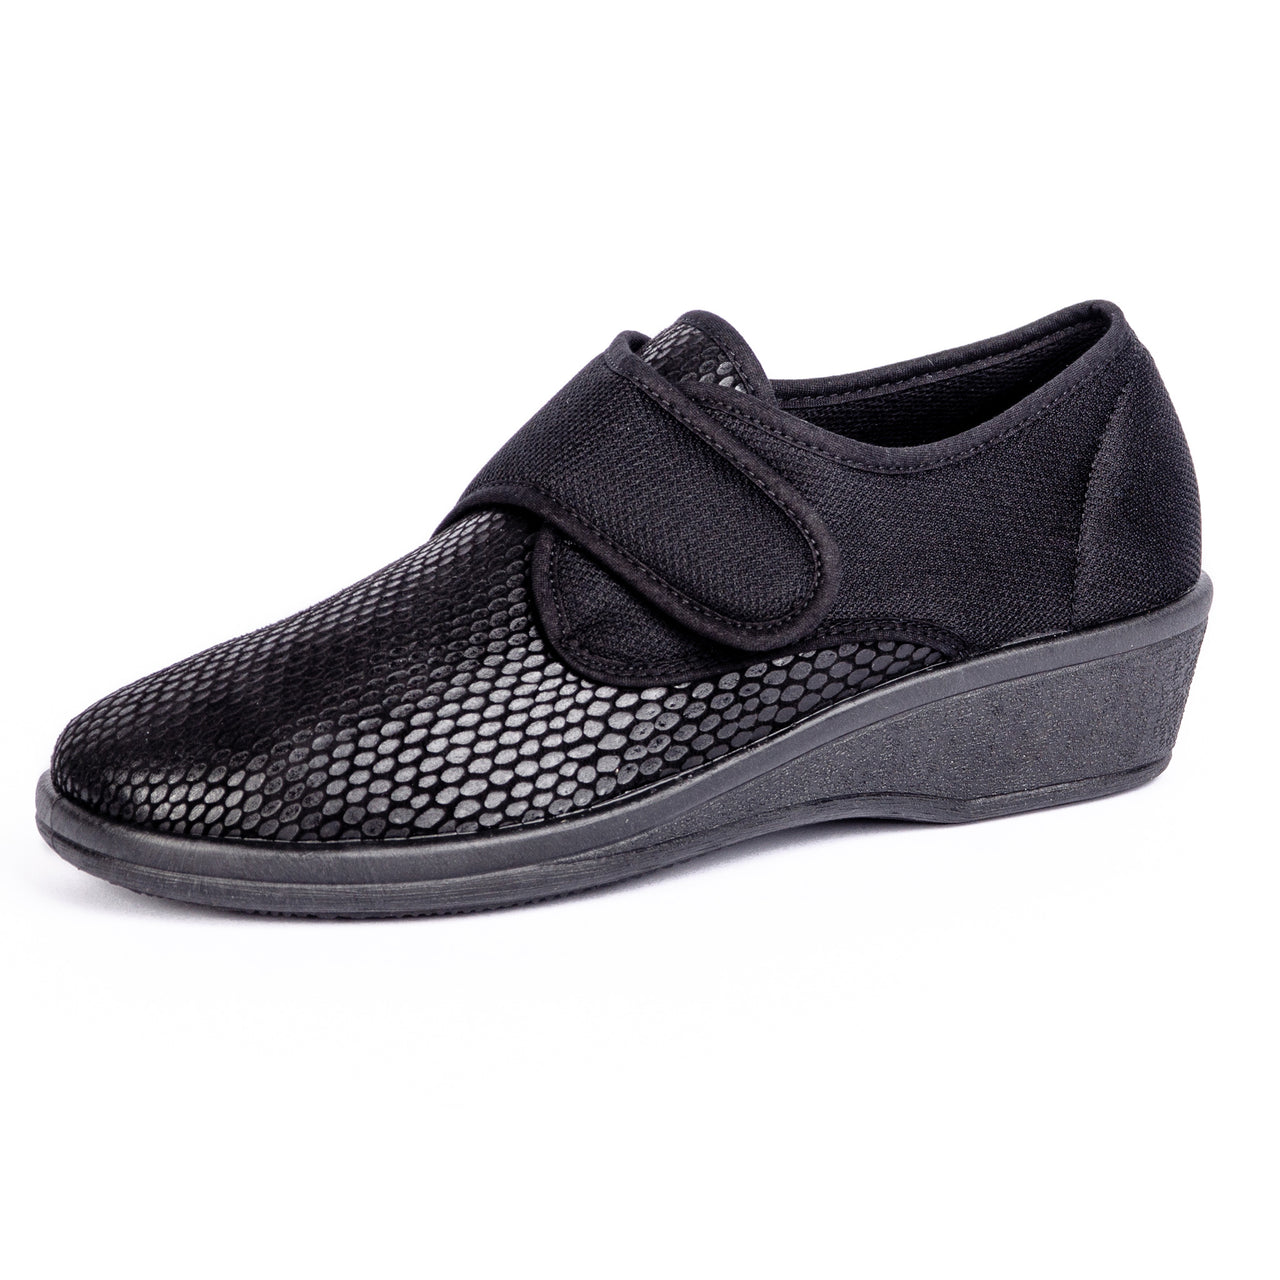 Chaussures Orthopédiques Pour Orthèses Extensibles Noires Style Cuir De Serpent Maximum Confort